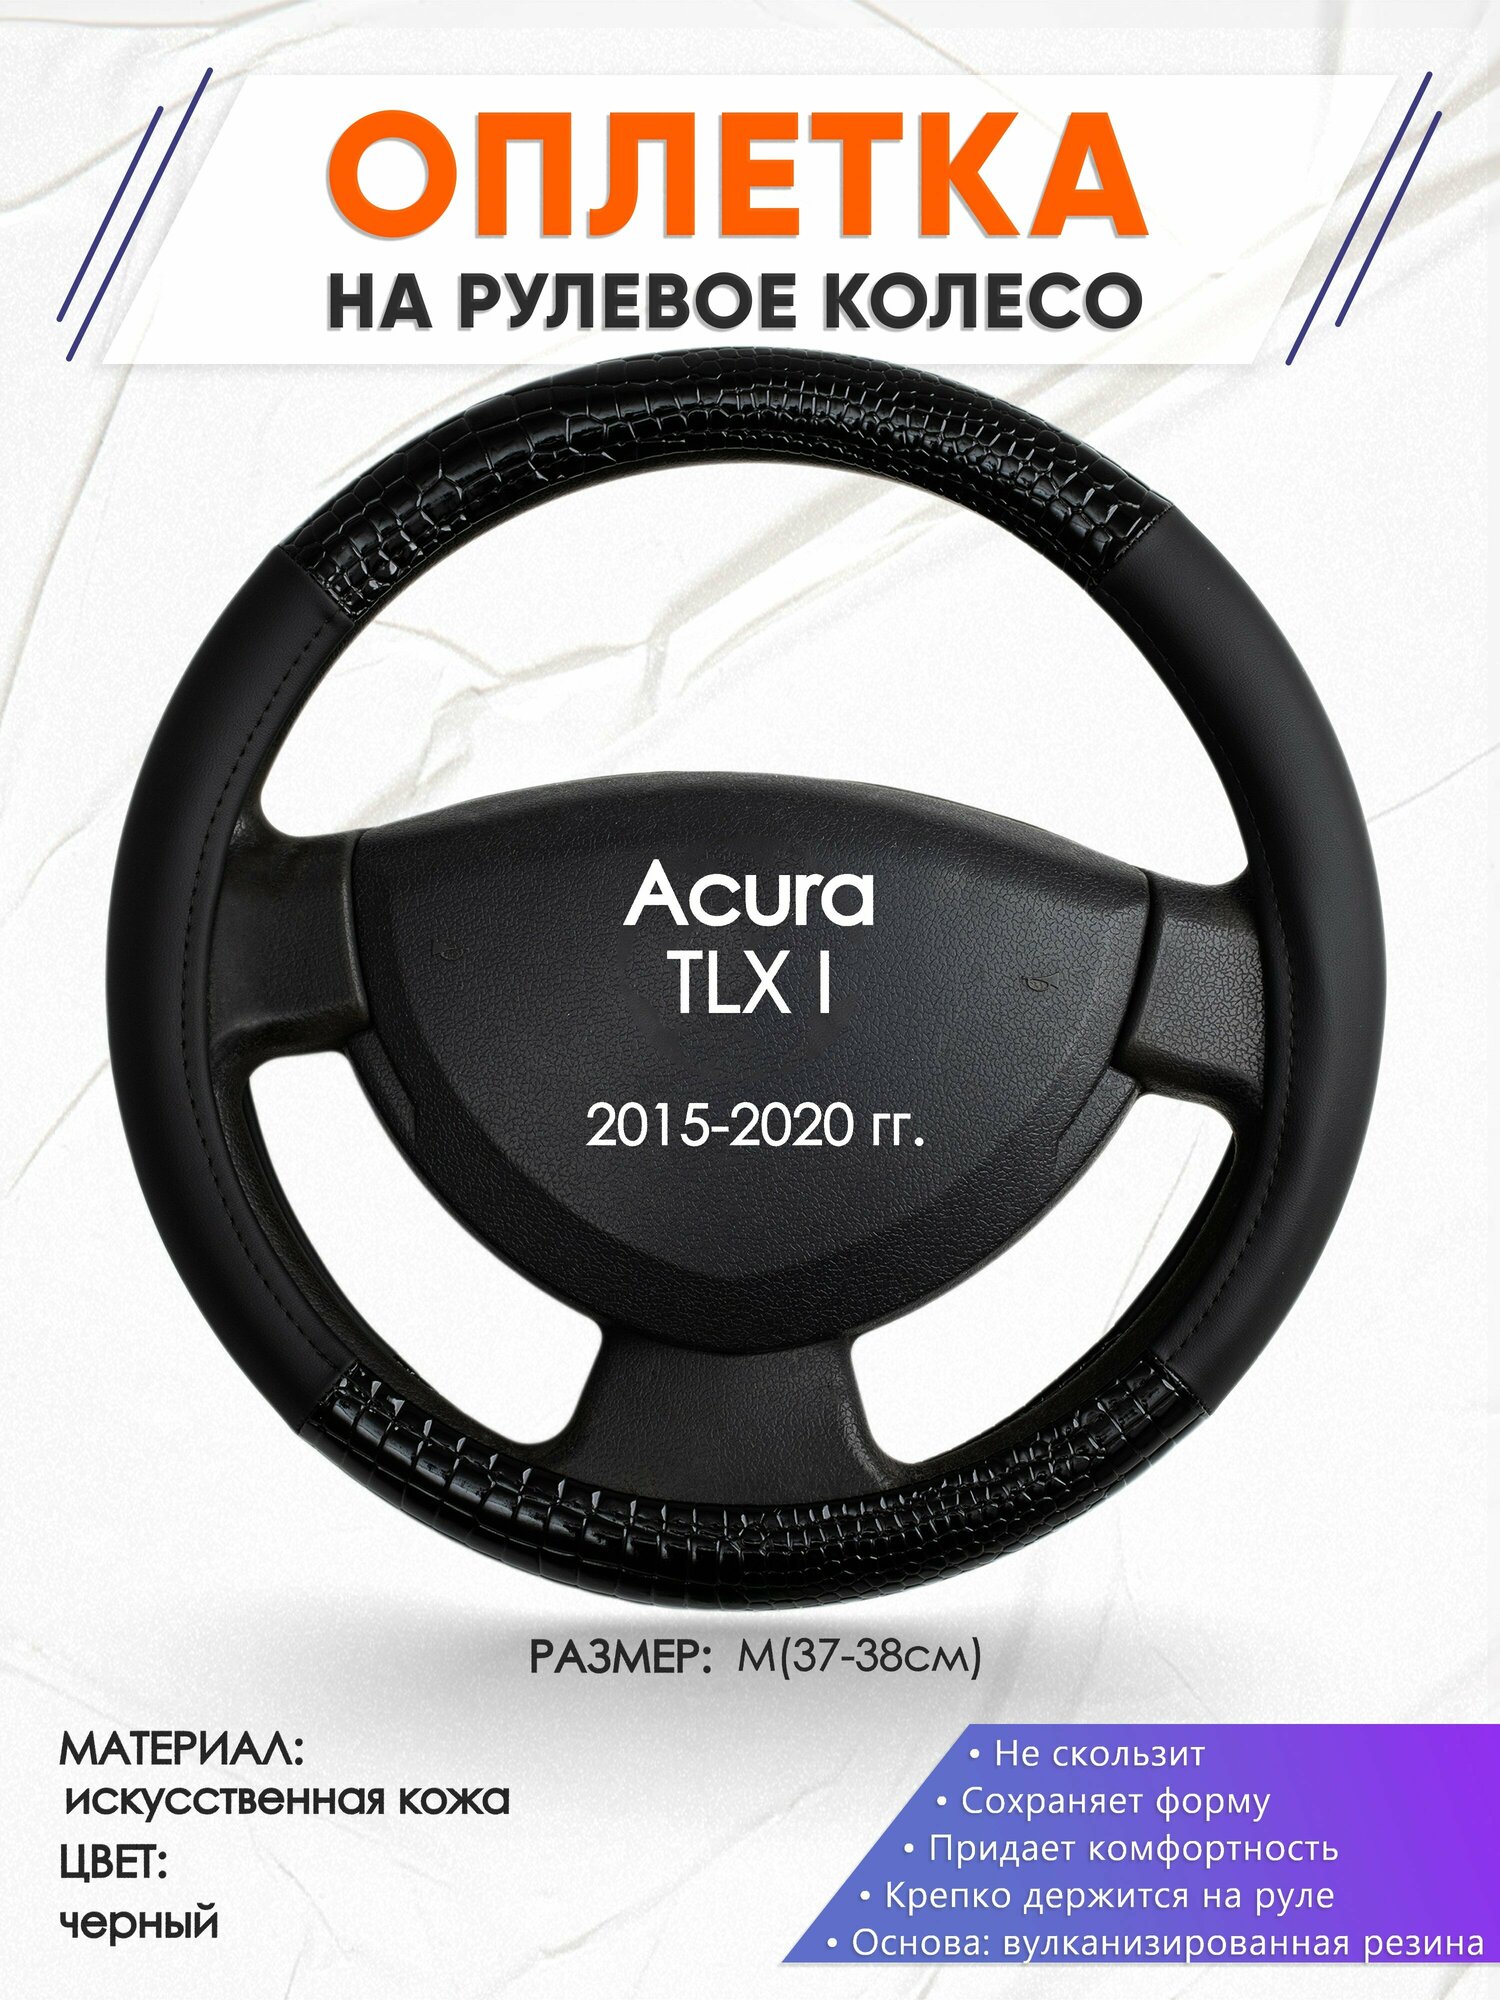 Оплетка наруль для Acura TLX I(Акура ТЛХ 1) 2015-2020 годов выпуска, размер M(37-38см), Искусственная кожа 83